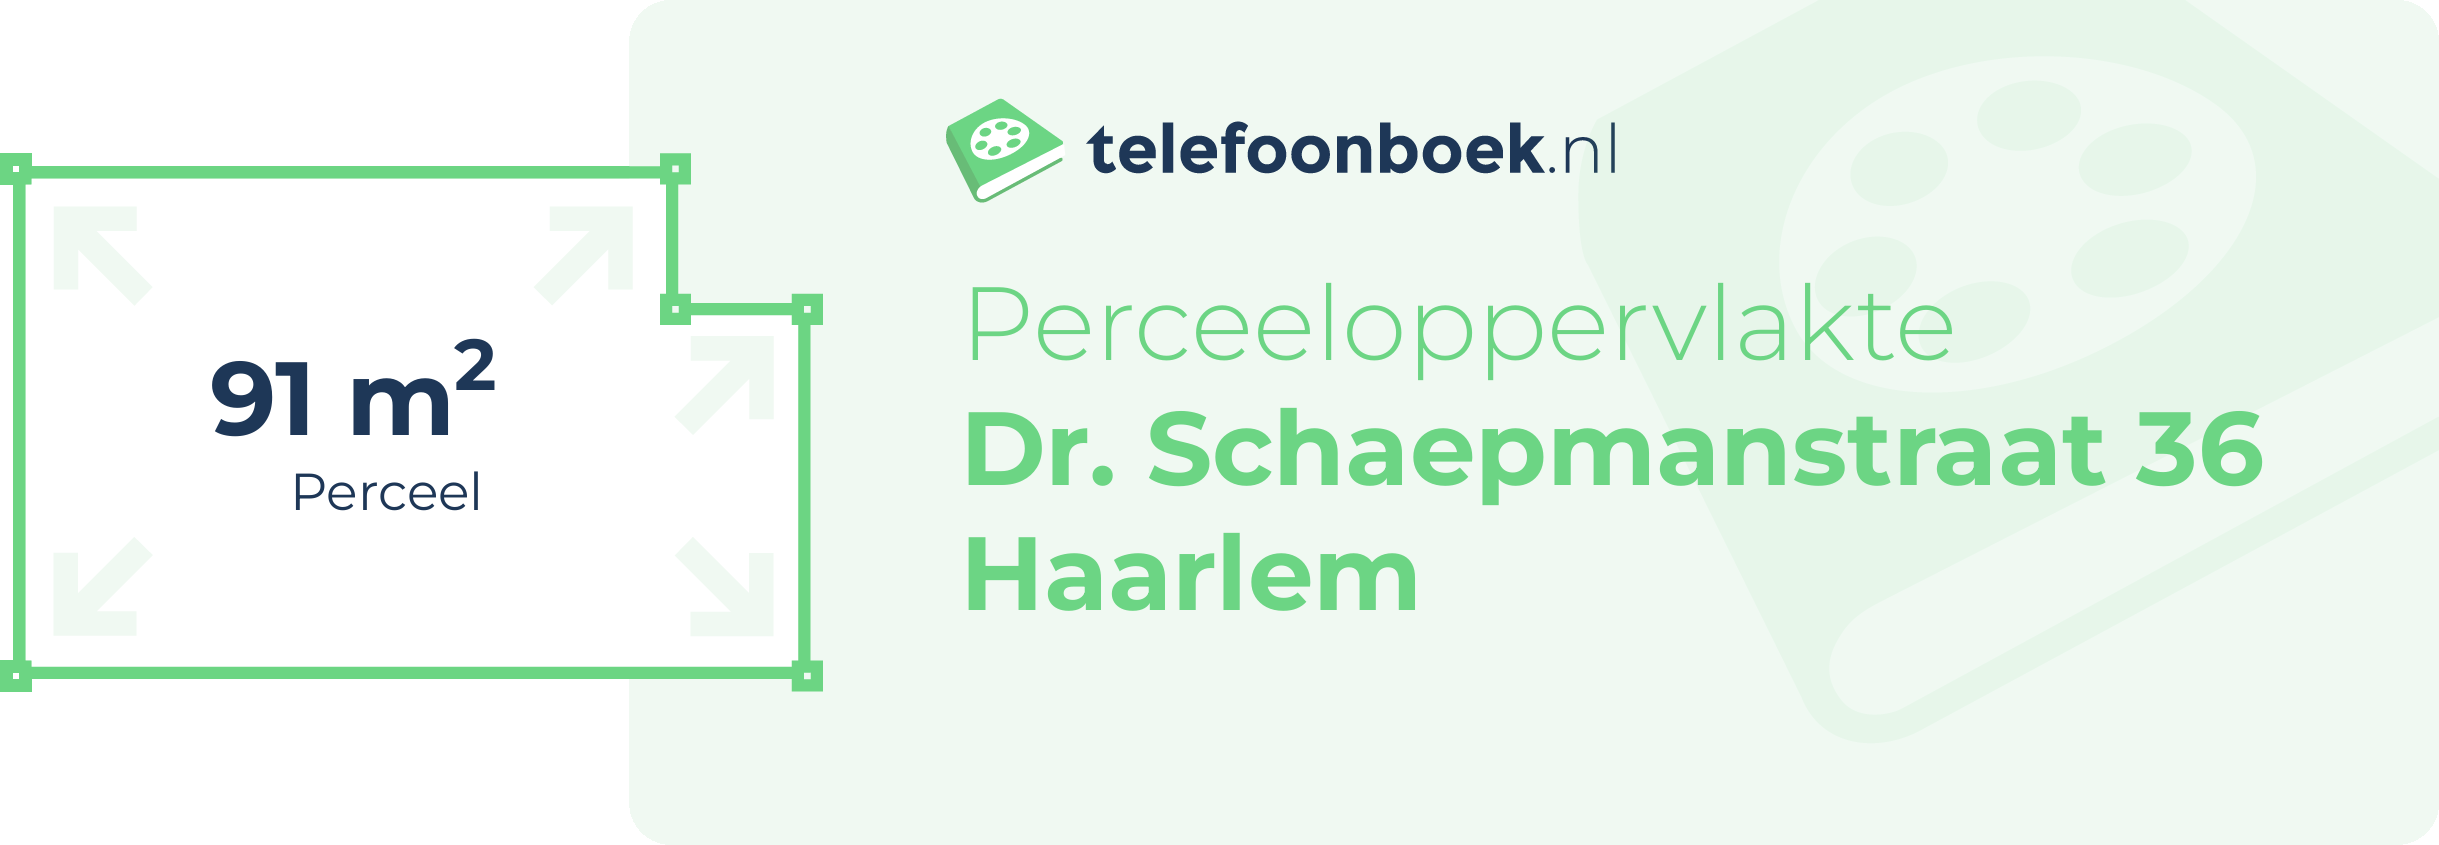 Perceeloppervlakte Dr. Schaepmanstraat 36 Haarlem